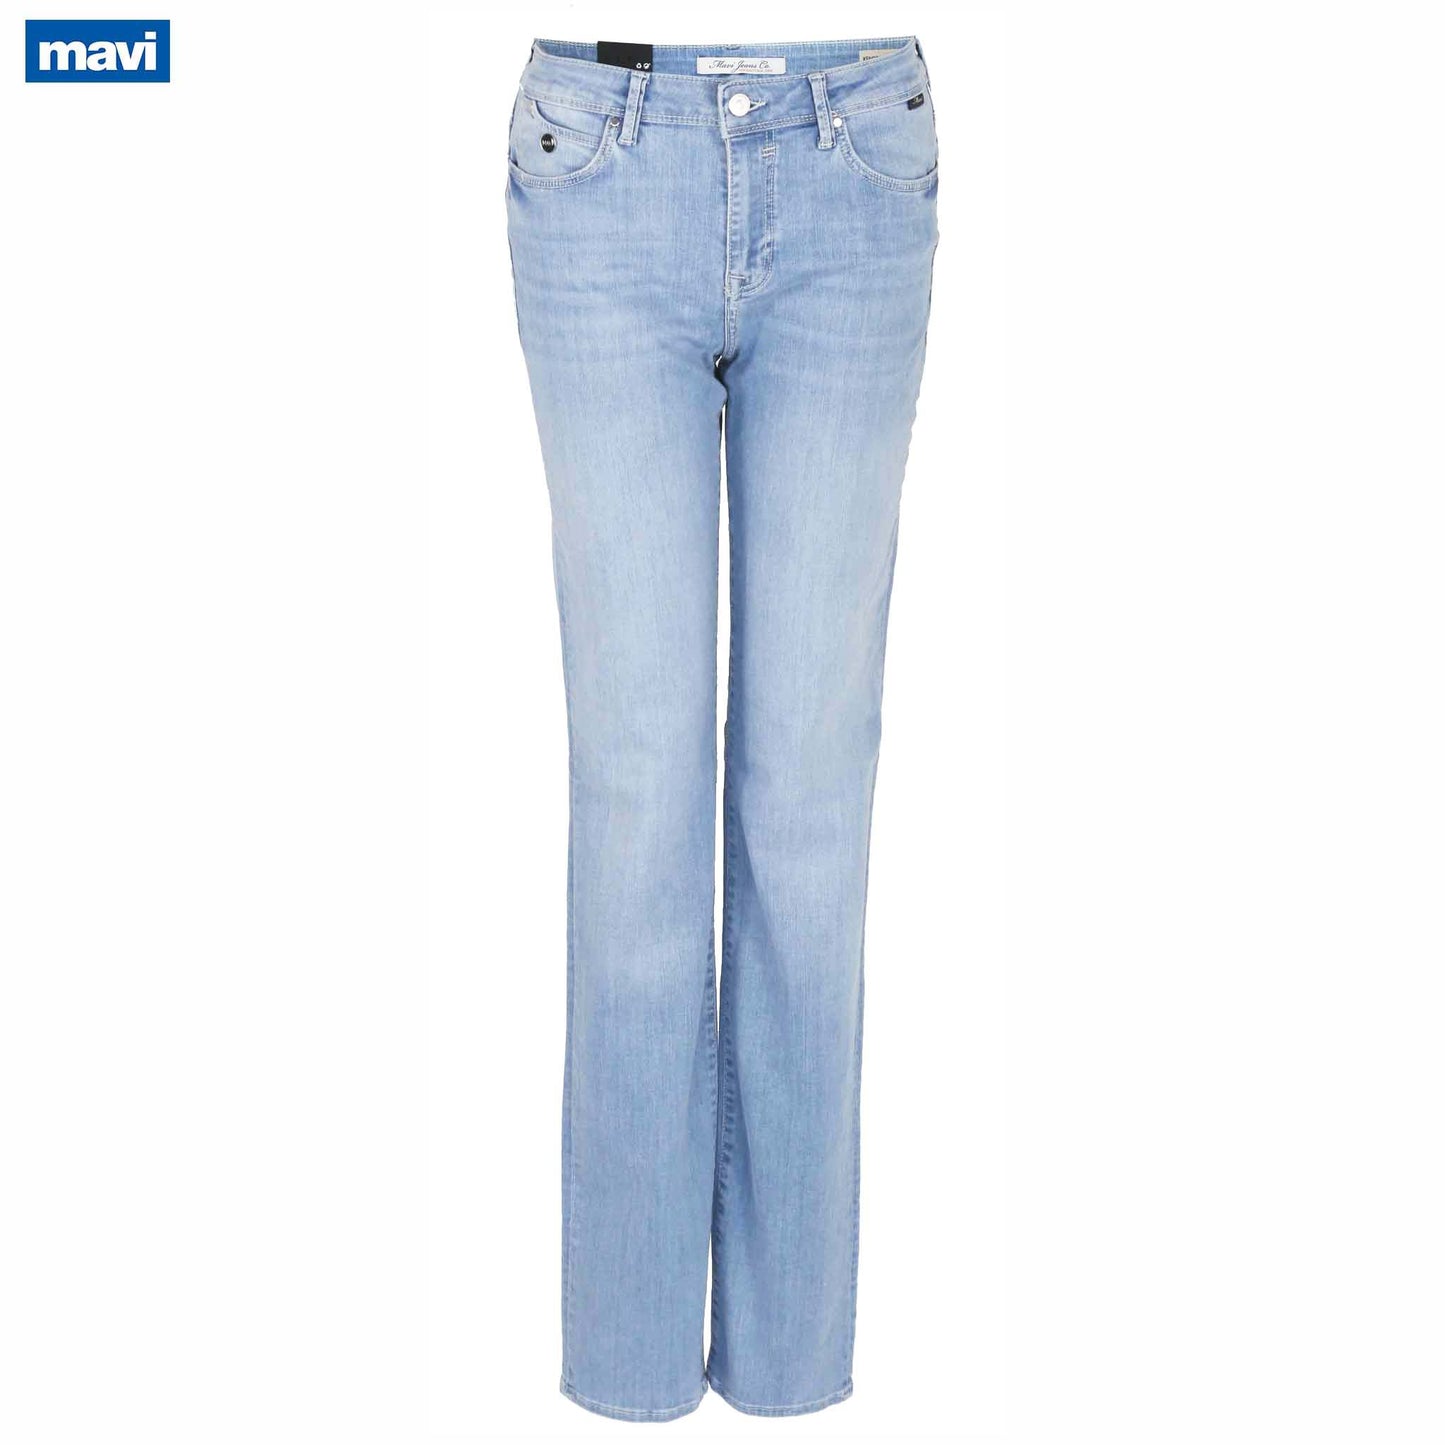 fashion tall woman mavi jeans kendra lt blue glam